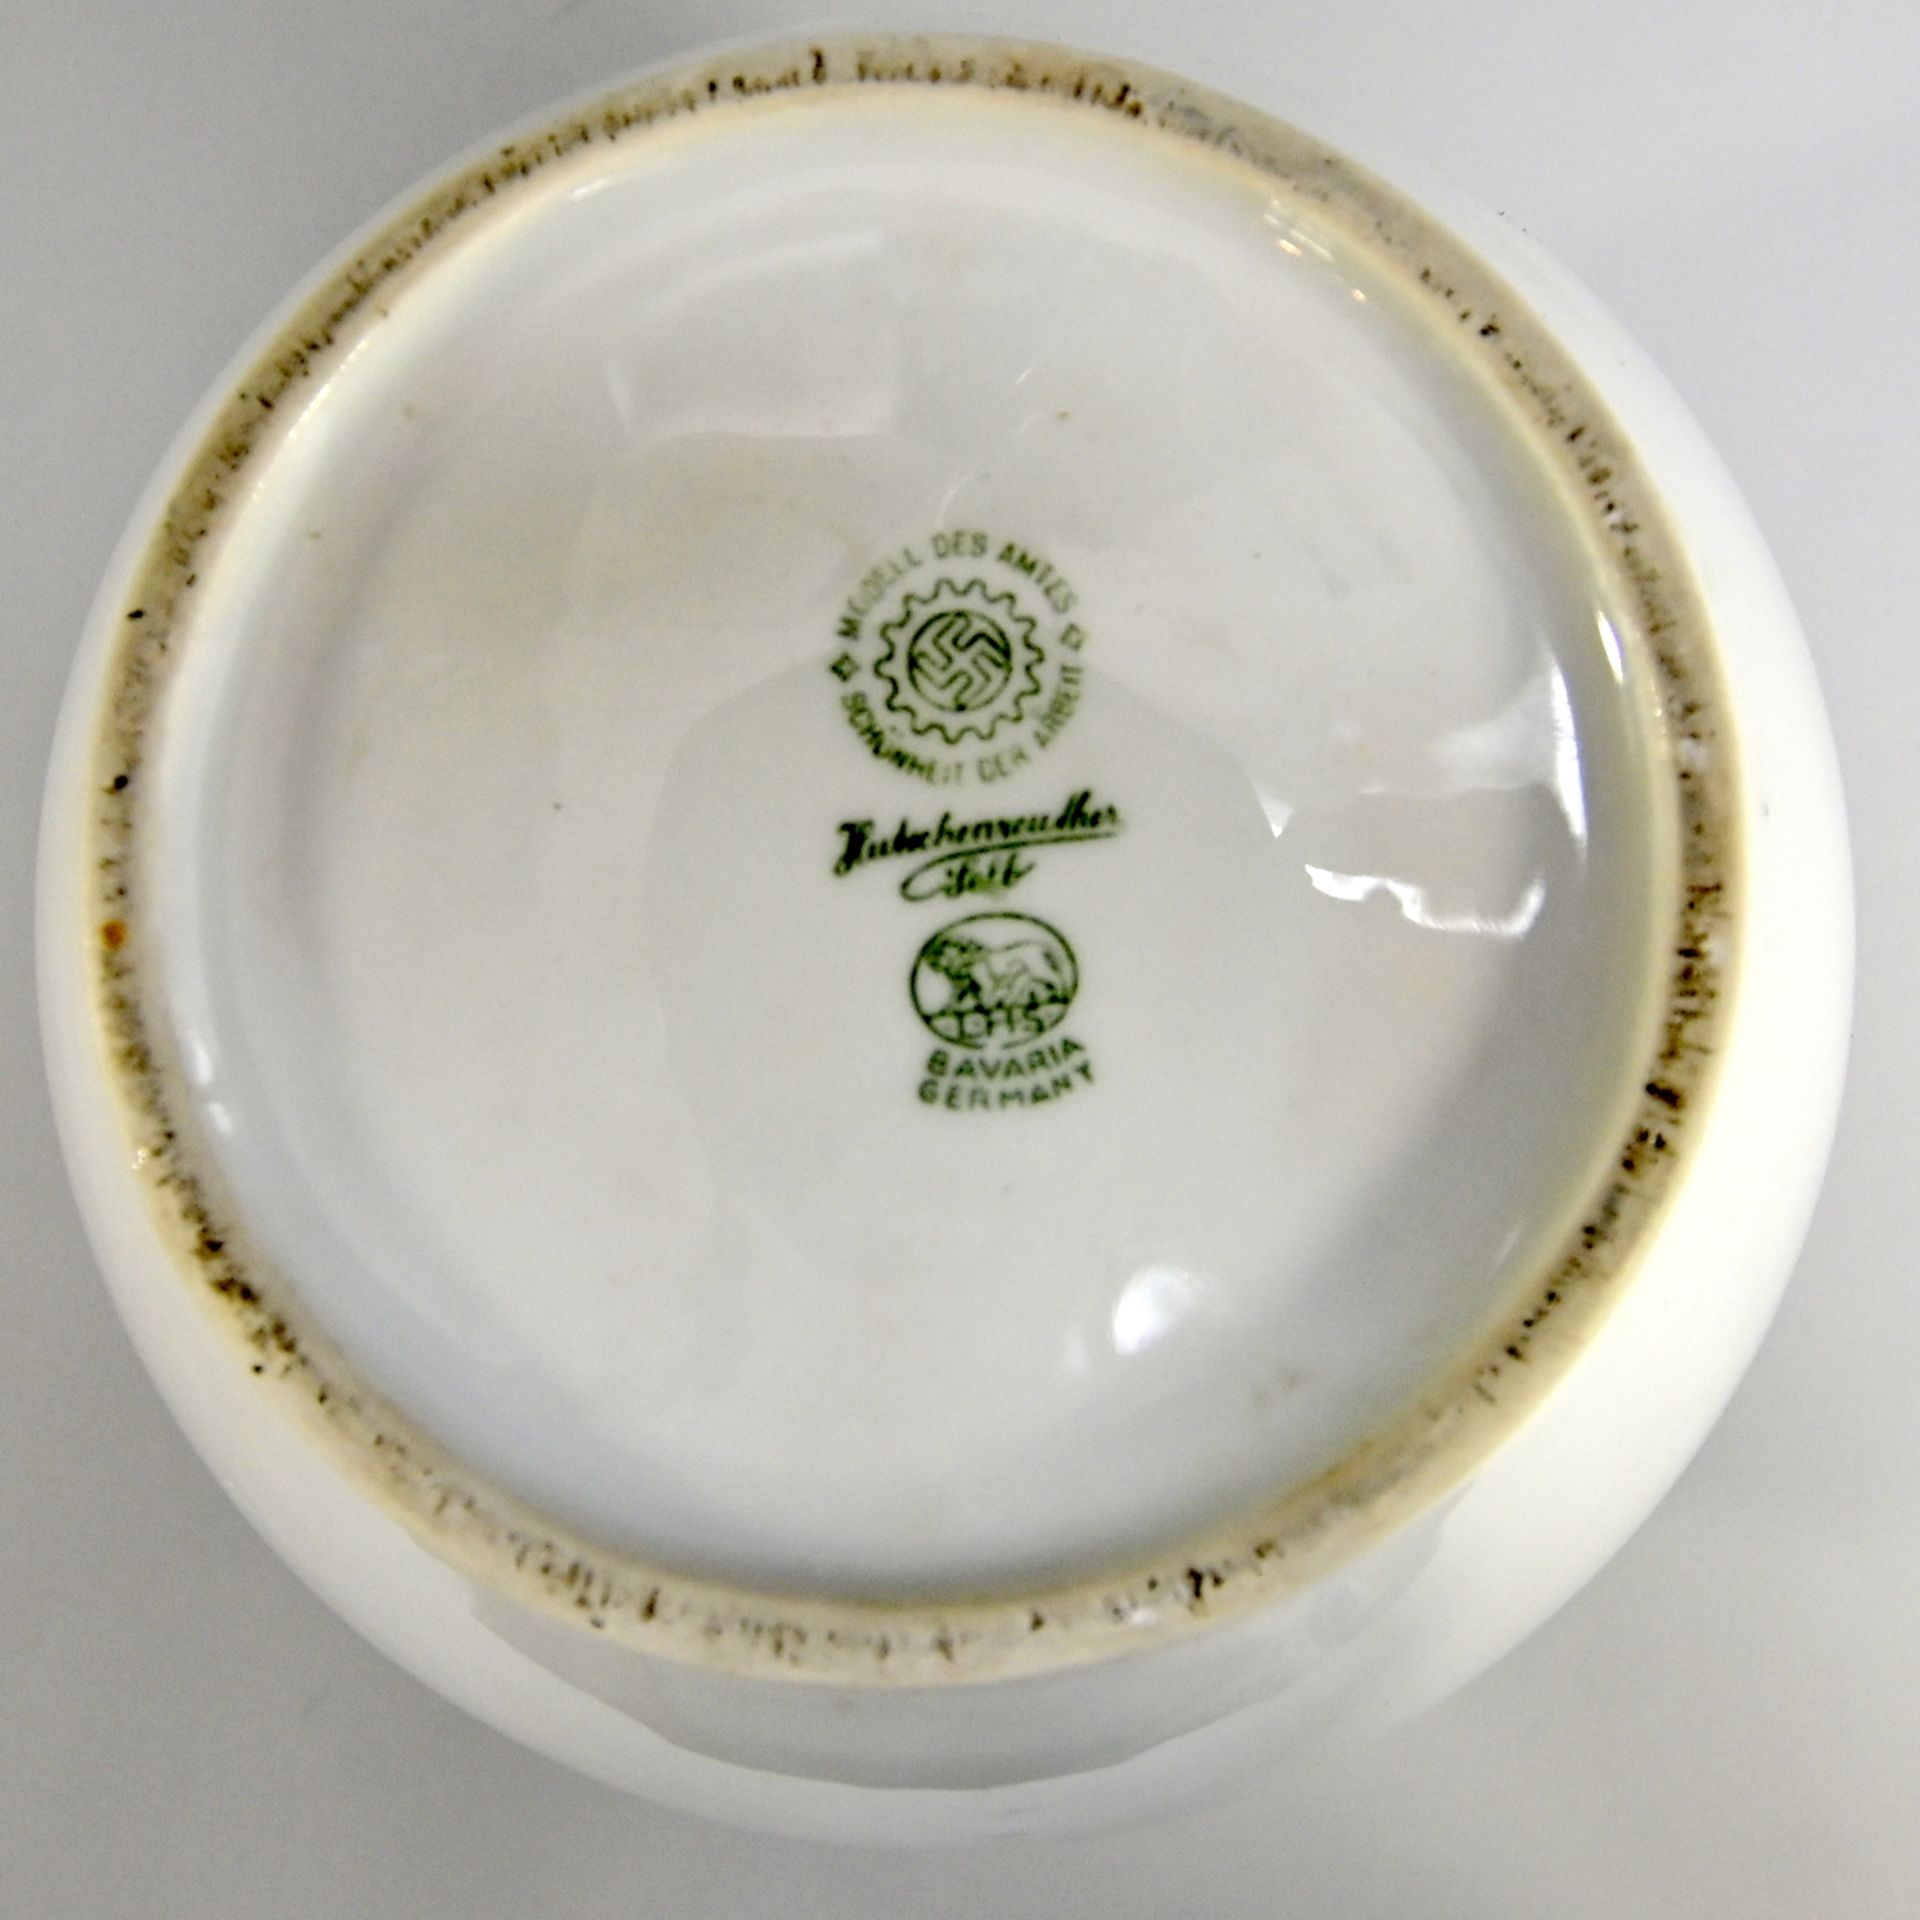 Porzellan-Vase, gemarkt Hutschenreuther Selb, Modell des Amtes Schönheit der Arbeit, H 19 cm - Bild 2 aus 2